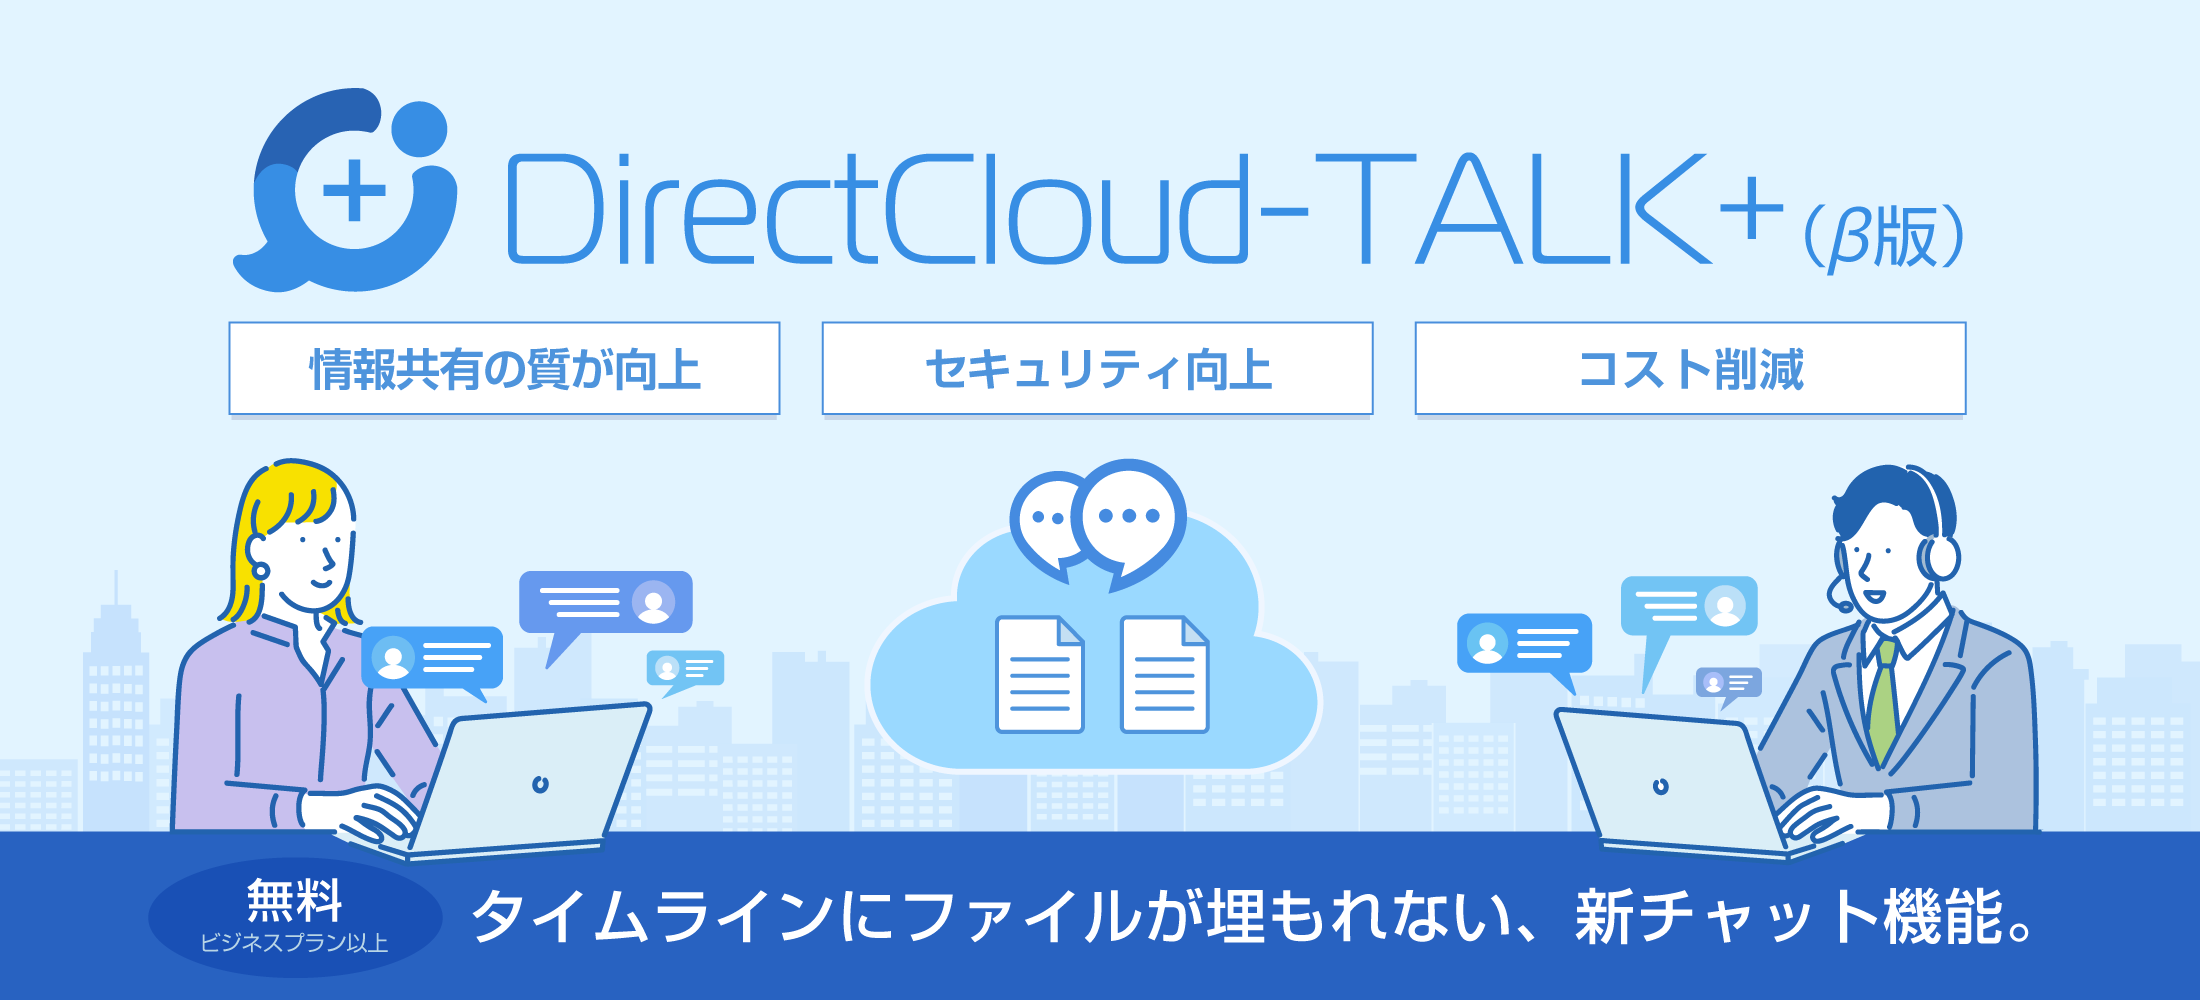 タイムラインにファイルが埋もれない、新チャット機能。「DirectCloud-TALK+」